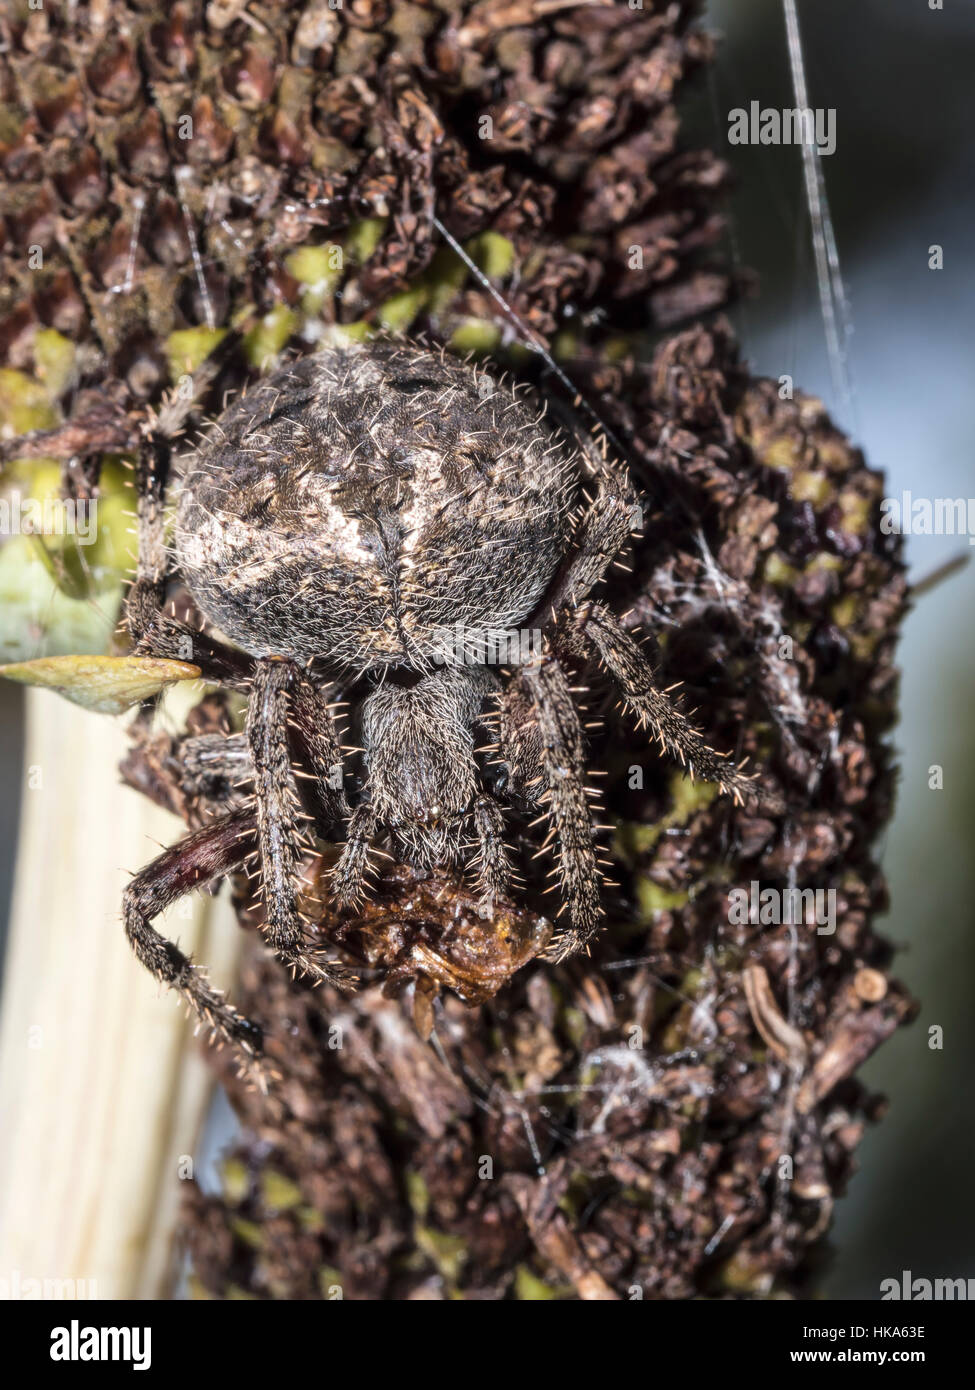 Casa común spider,Parasteatoda tepidariorum, se conoce internacionalmente como la American house spider Foto de stock